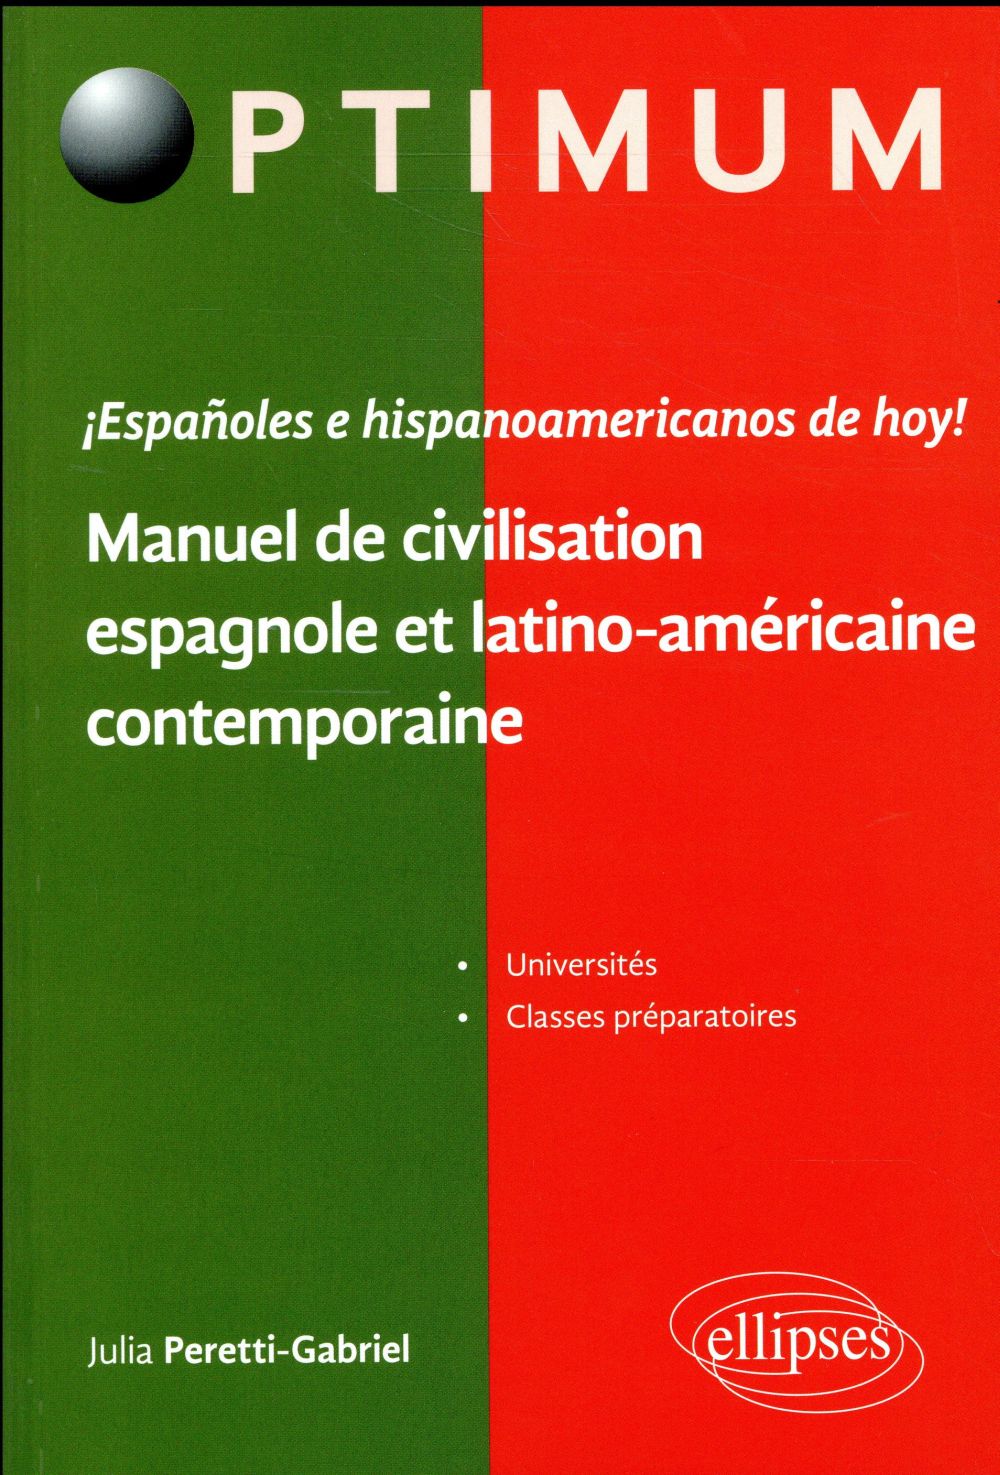 I ESPANOLES E HISPANOAMERICANOS DE HOY ! MANUEL DE CIVILISATION ESPAGNOLE ET LATINO-AMERICAINE CONTE